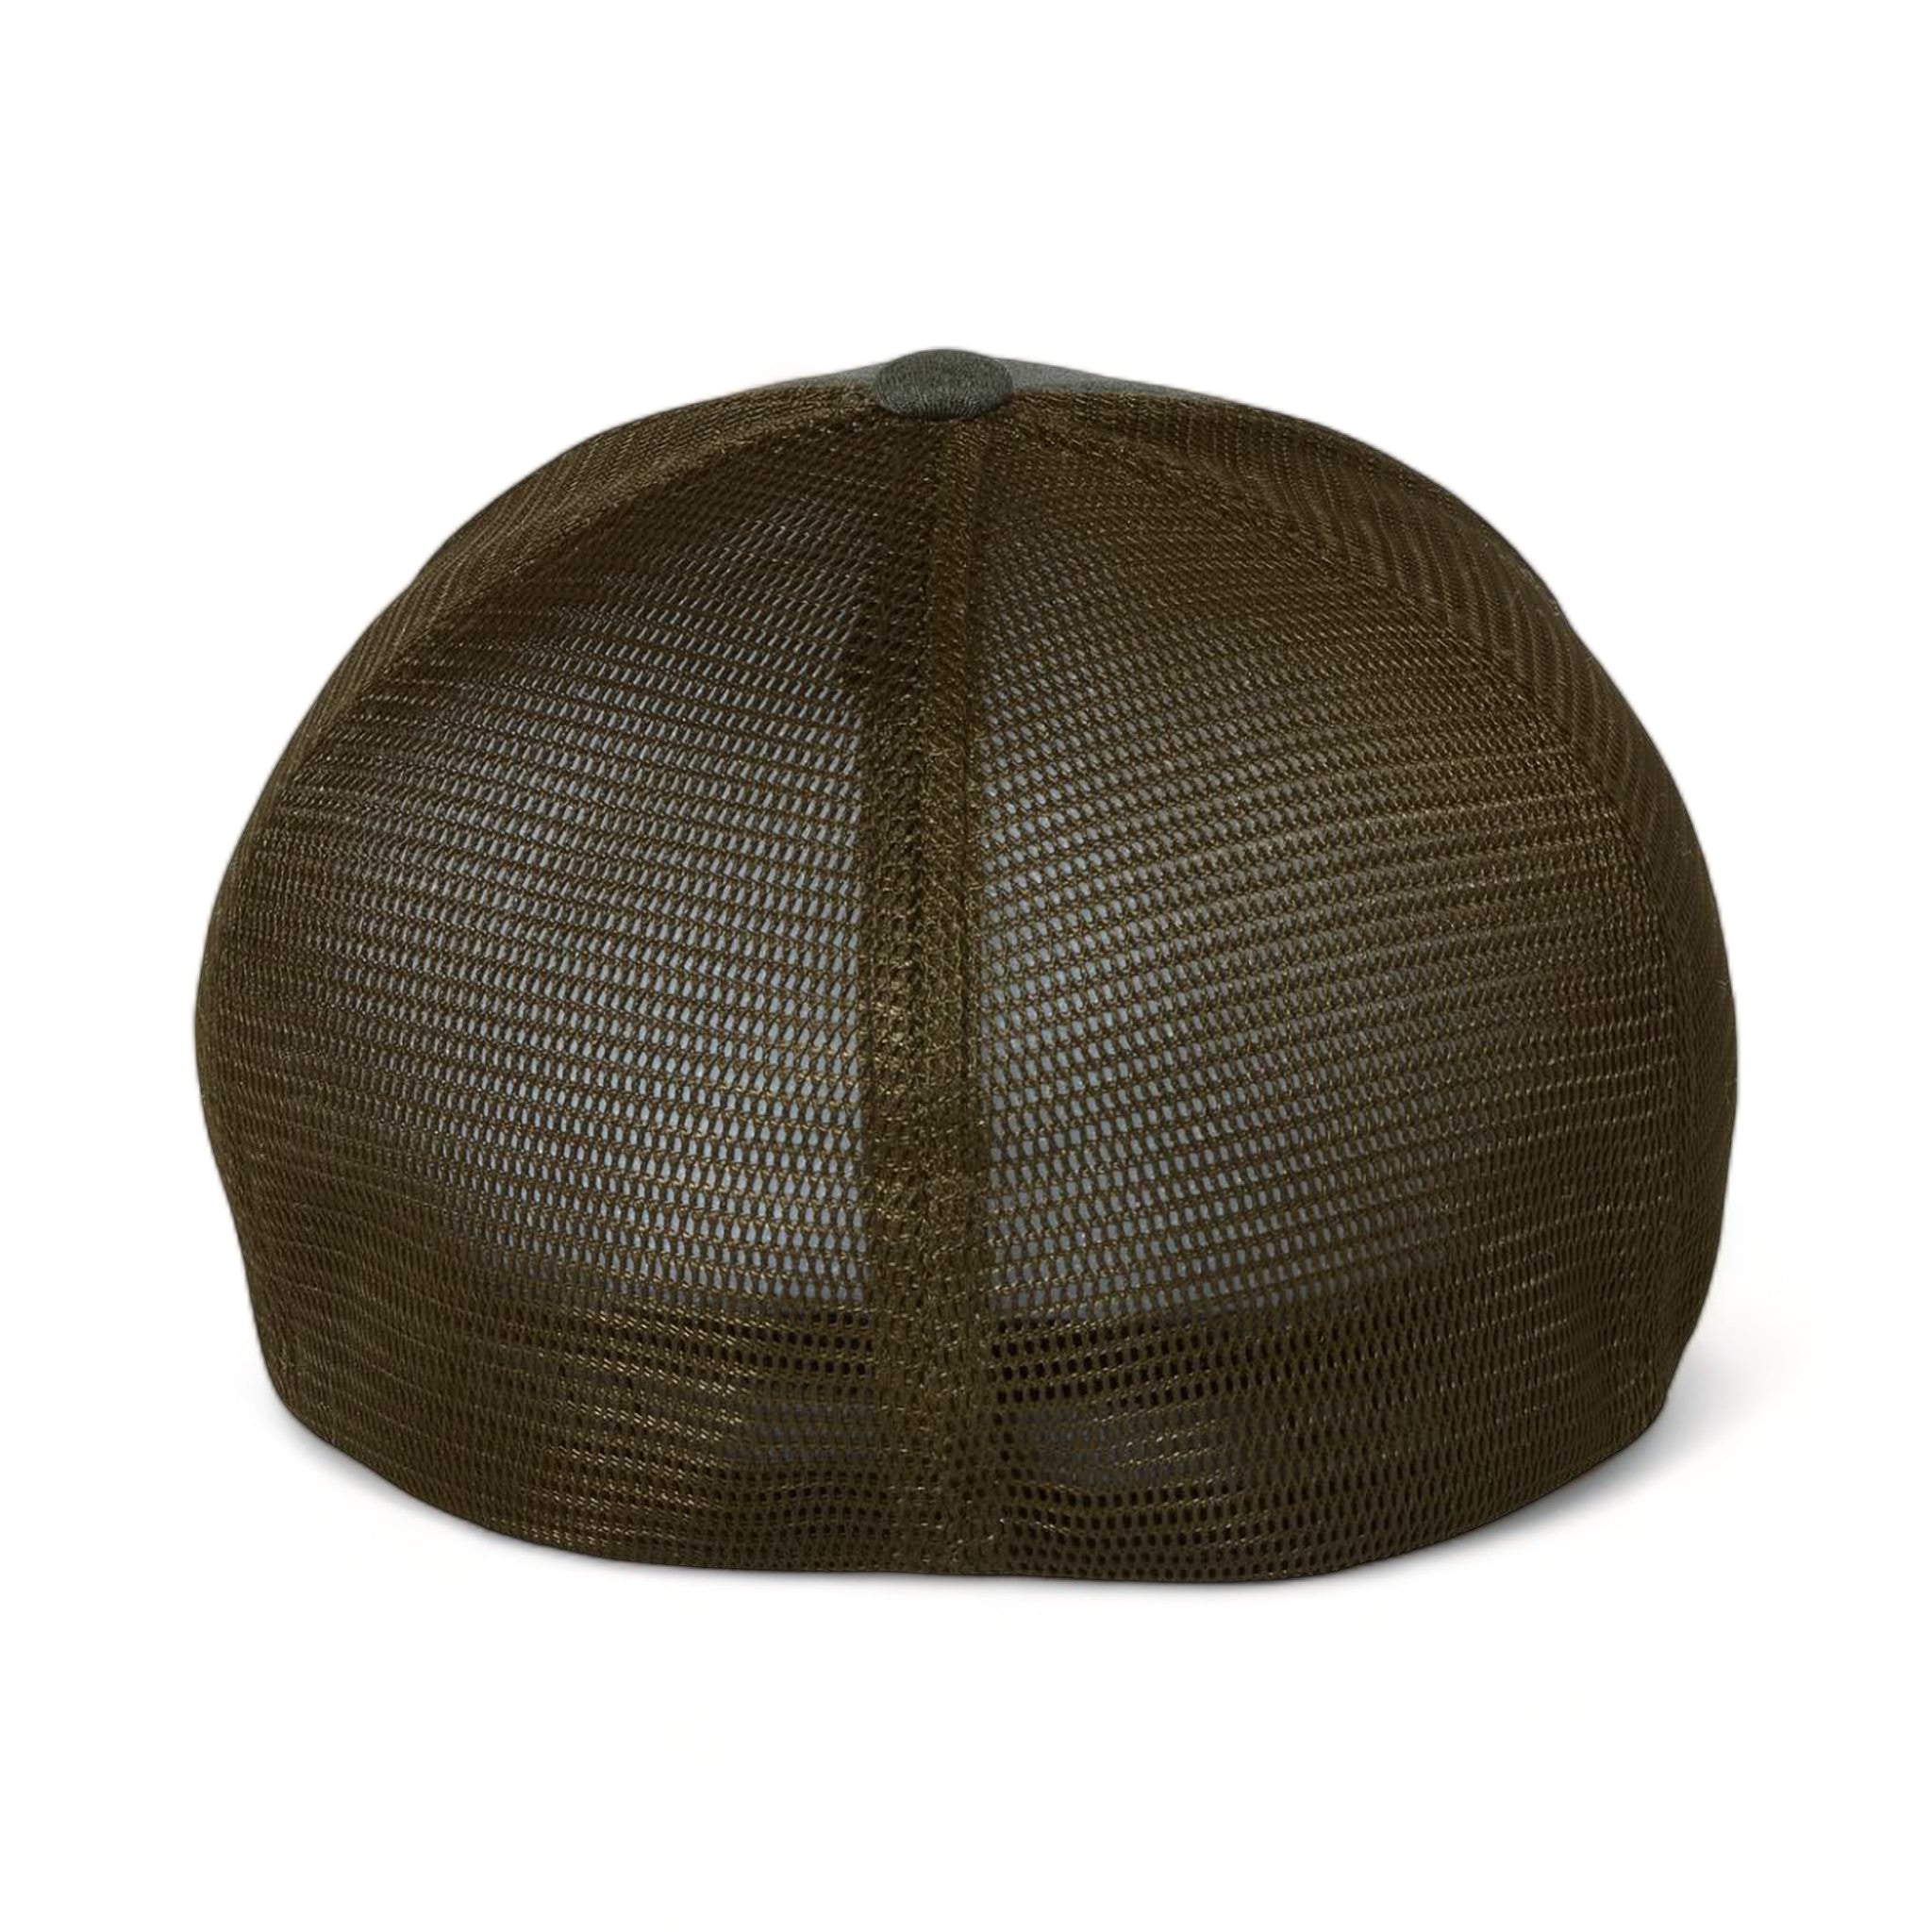 Back view of Flexfit 5511UP custom hat in mélange olive